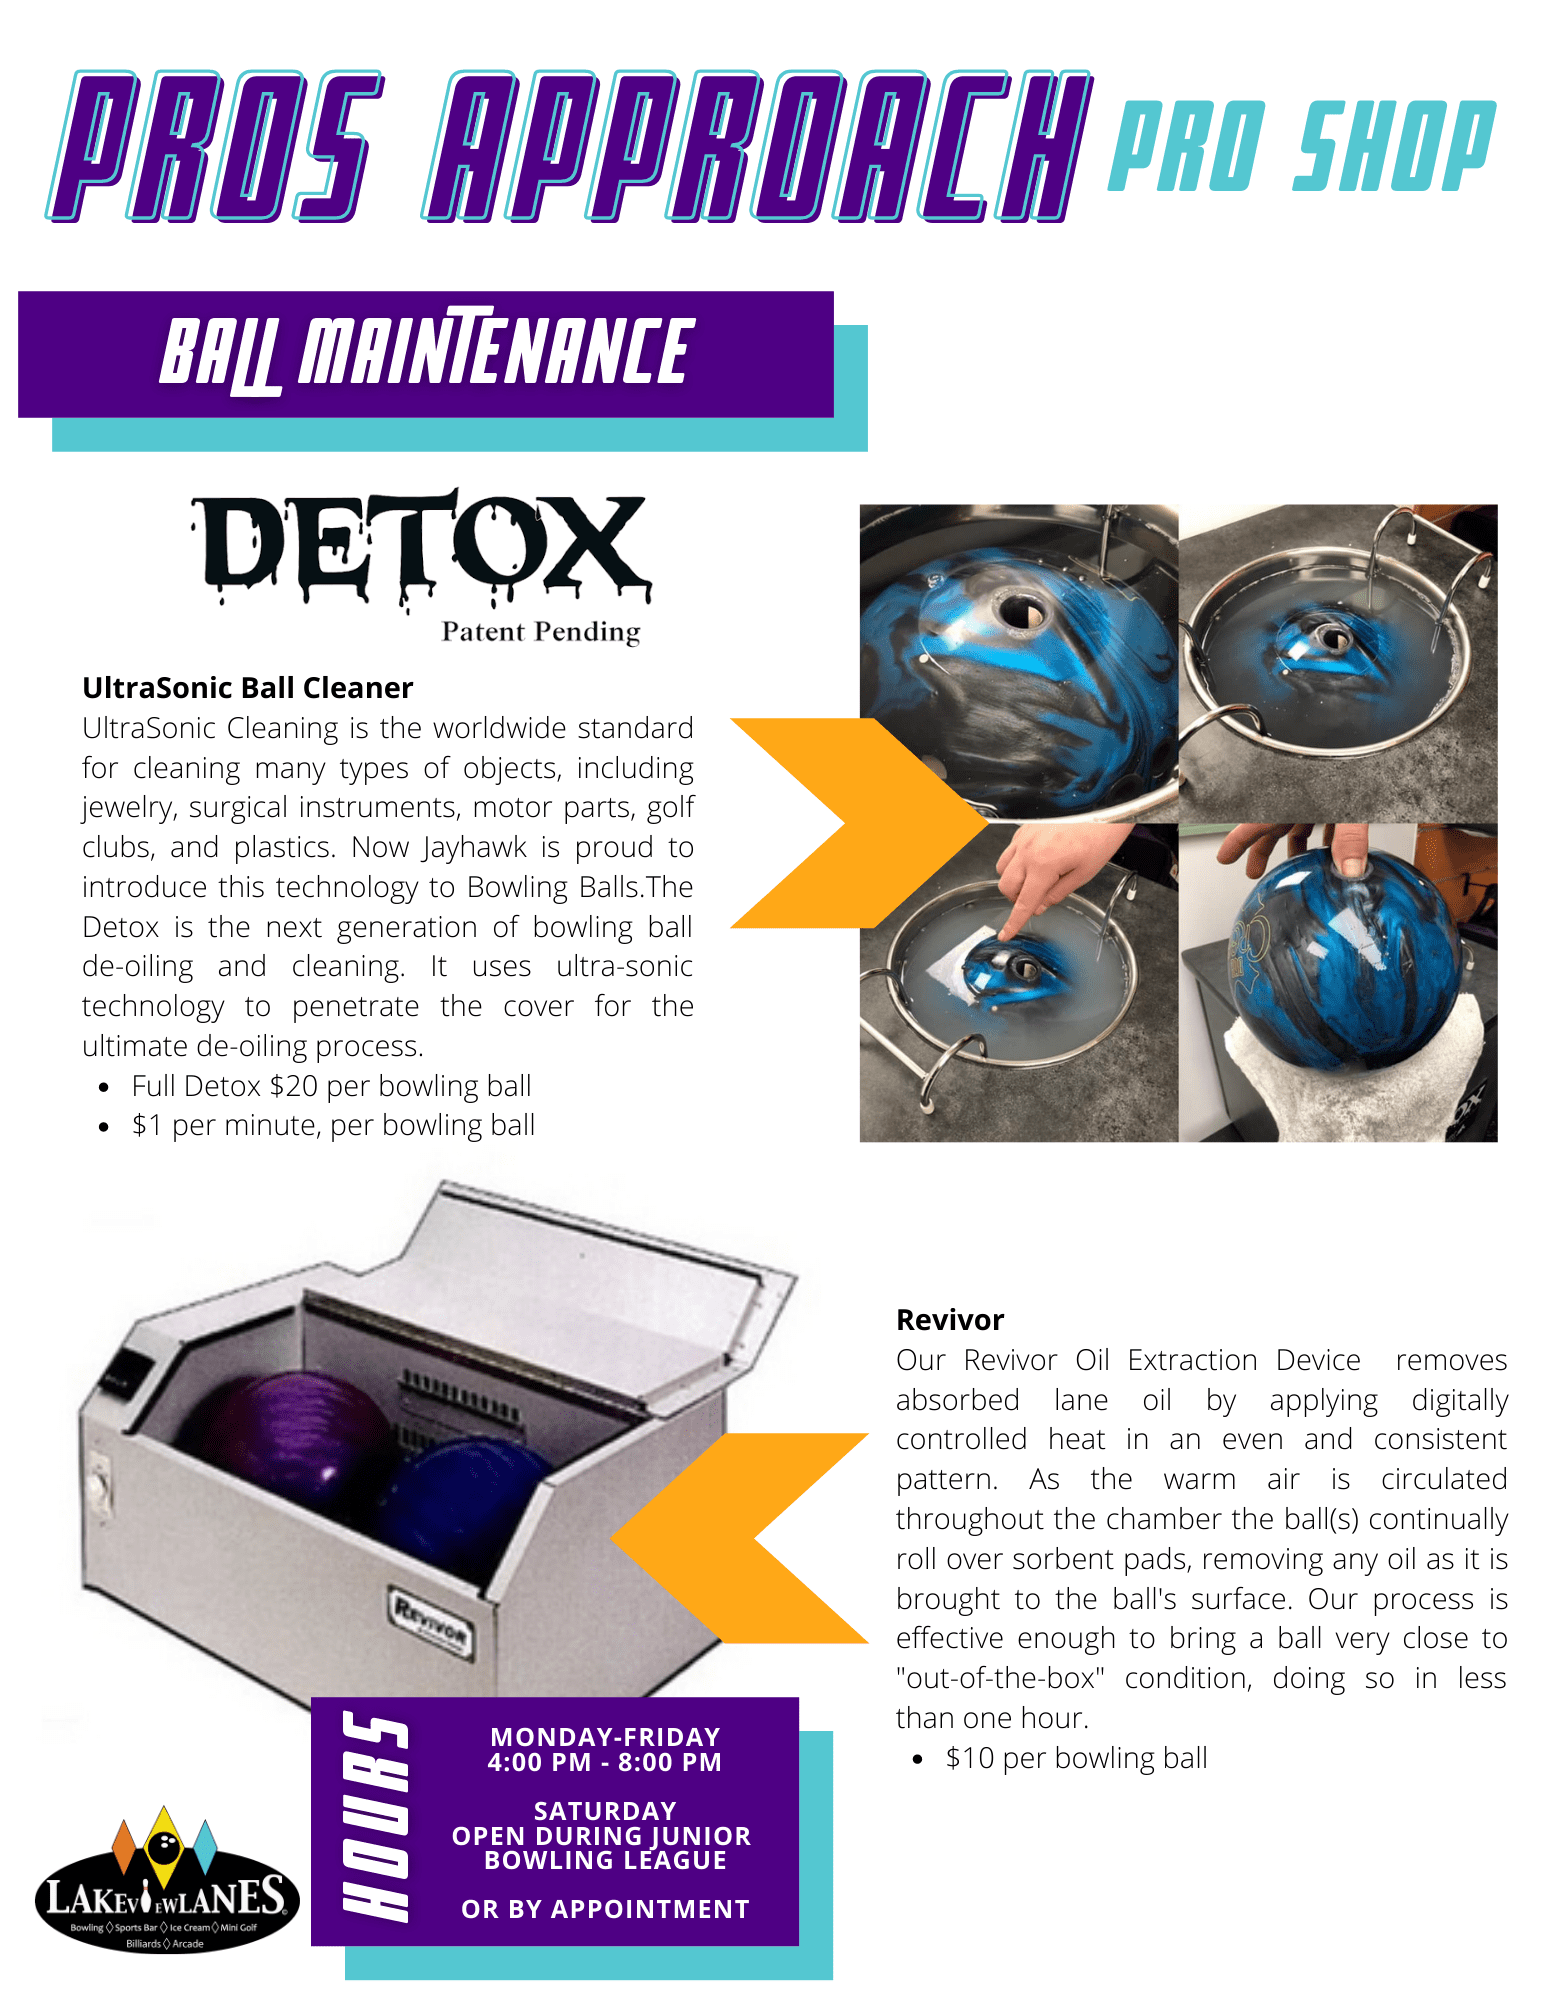 Detox Machine Description